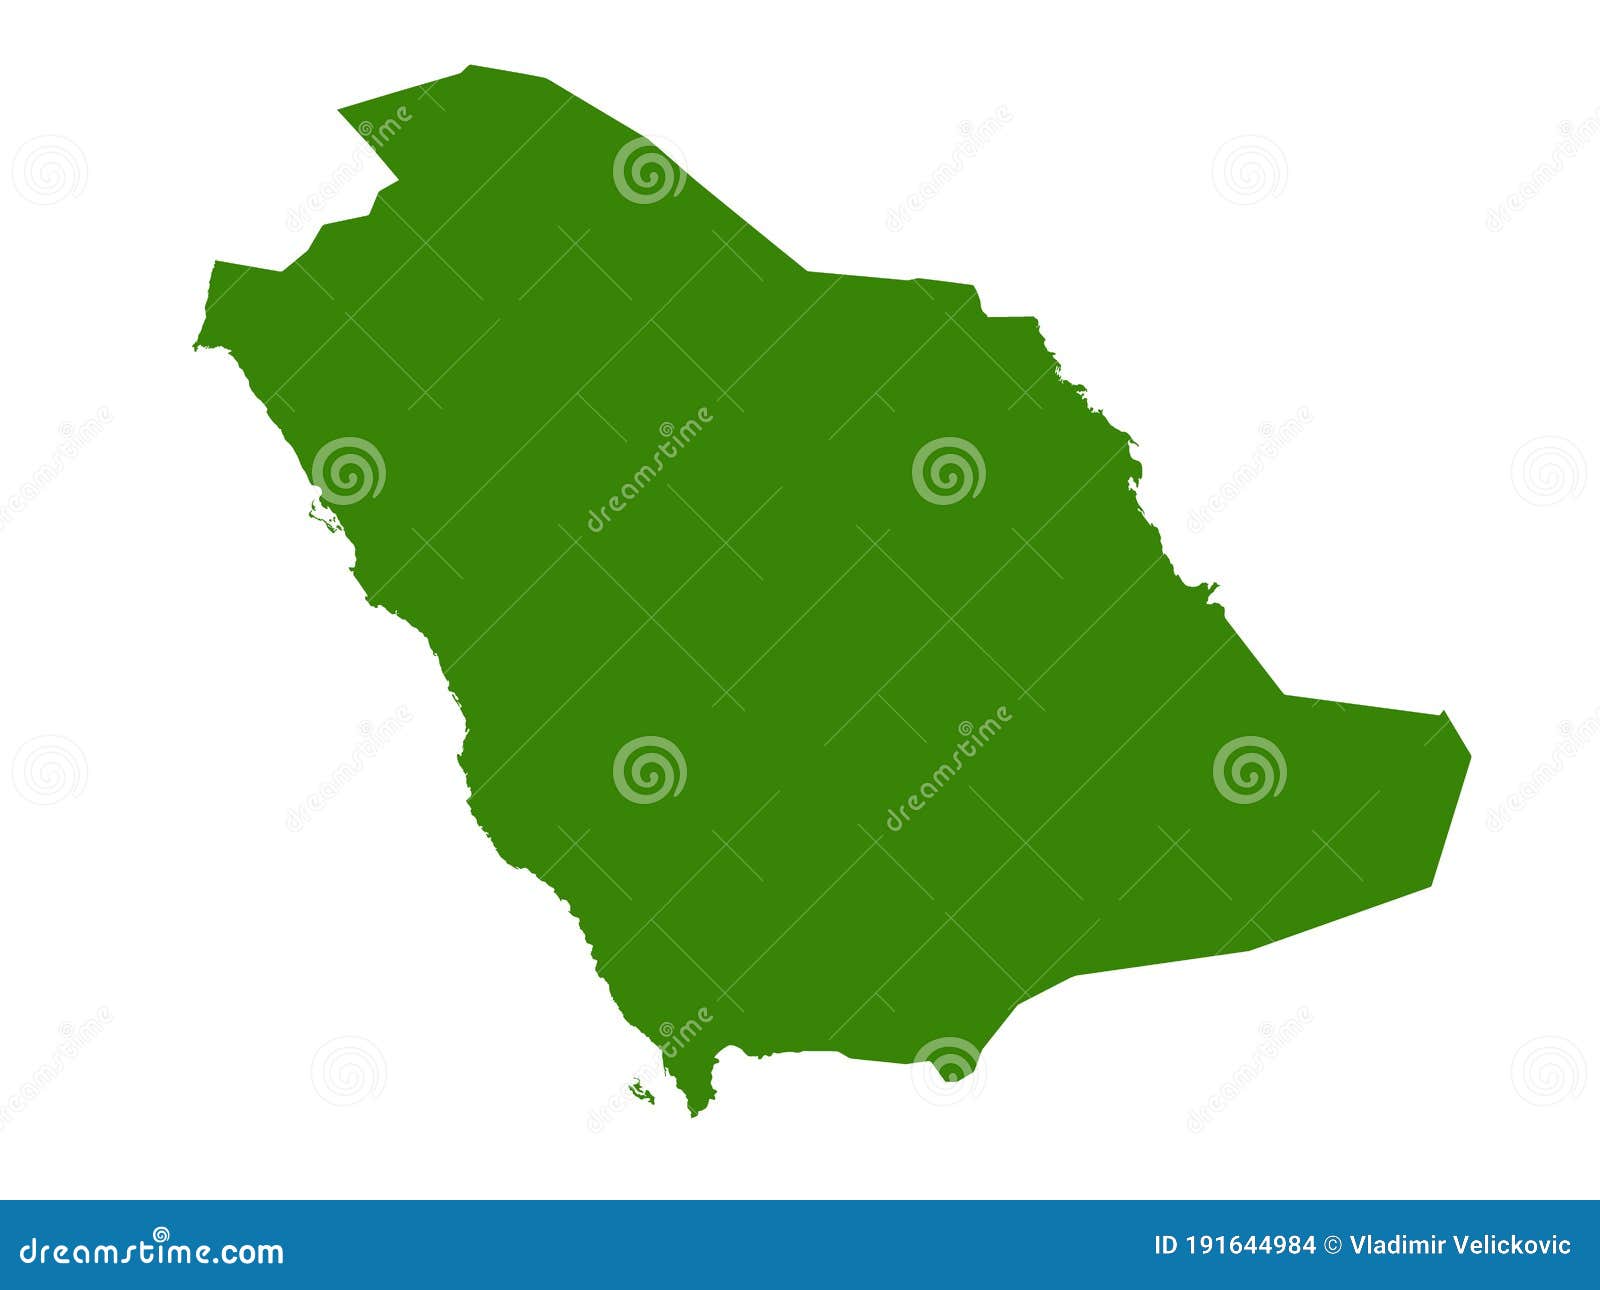 saudi arabia map - state of the kingdom of saudi arabia